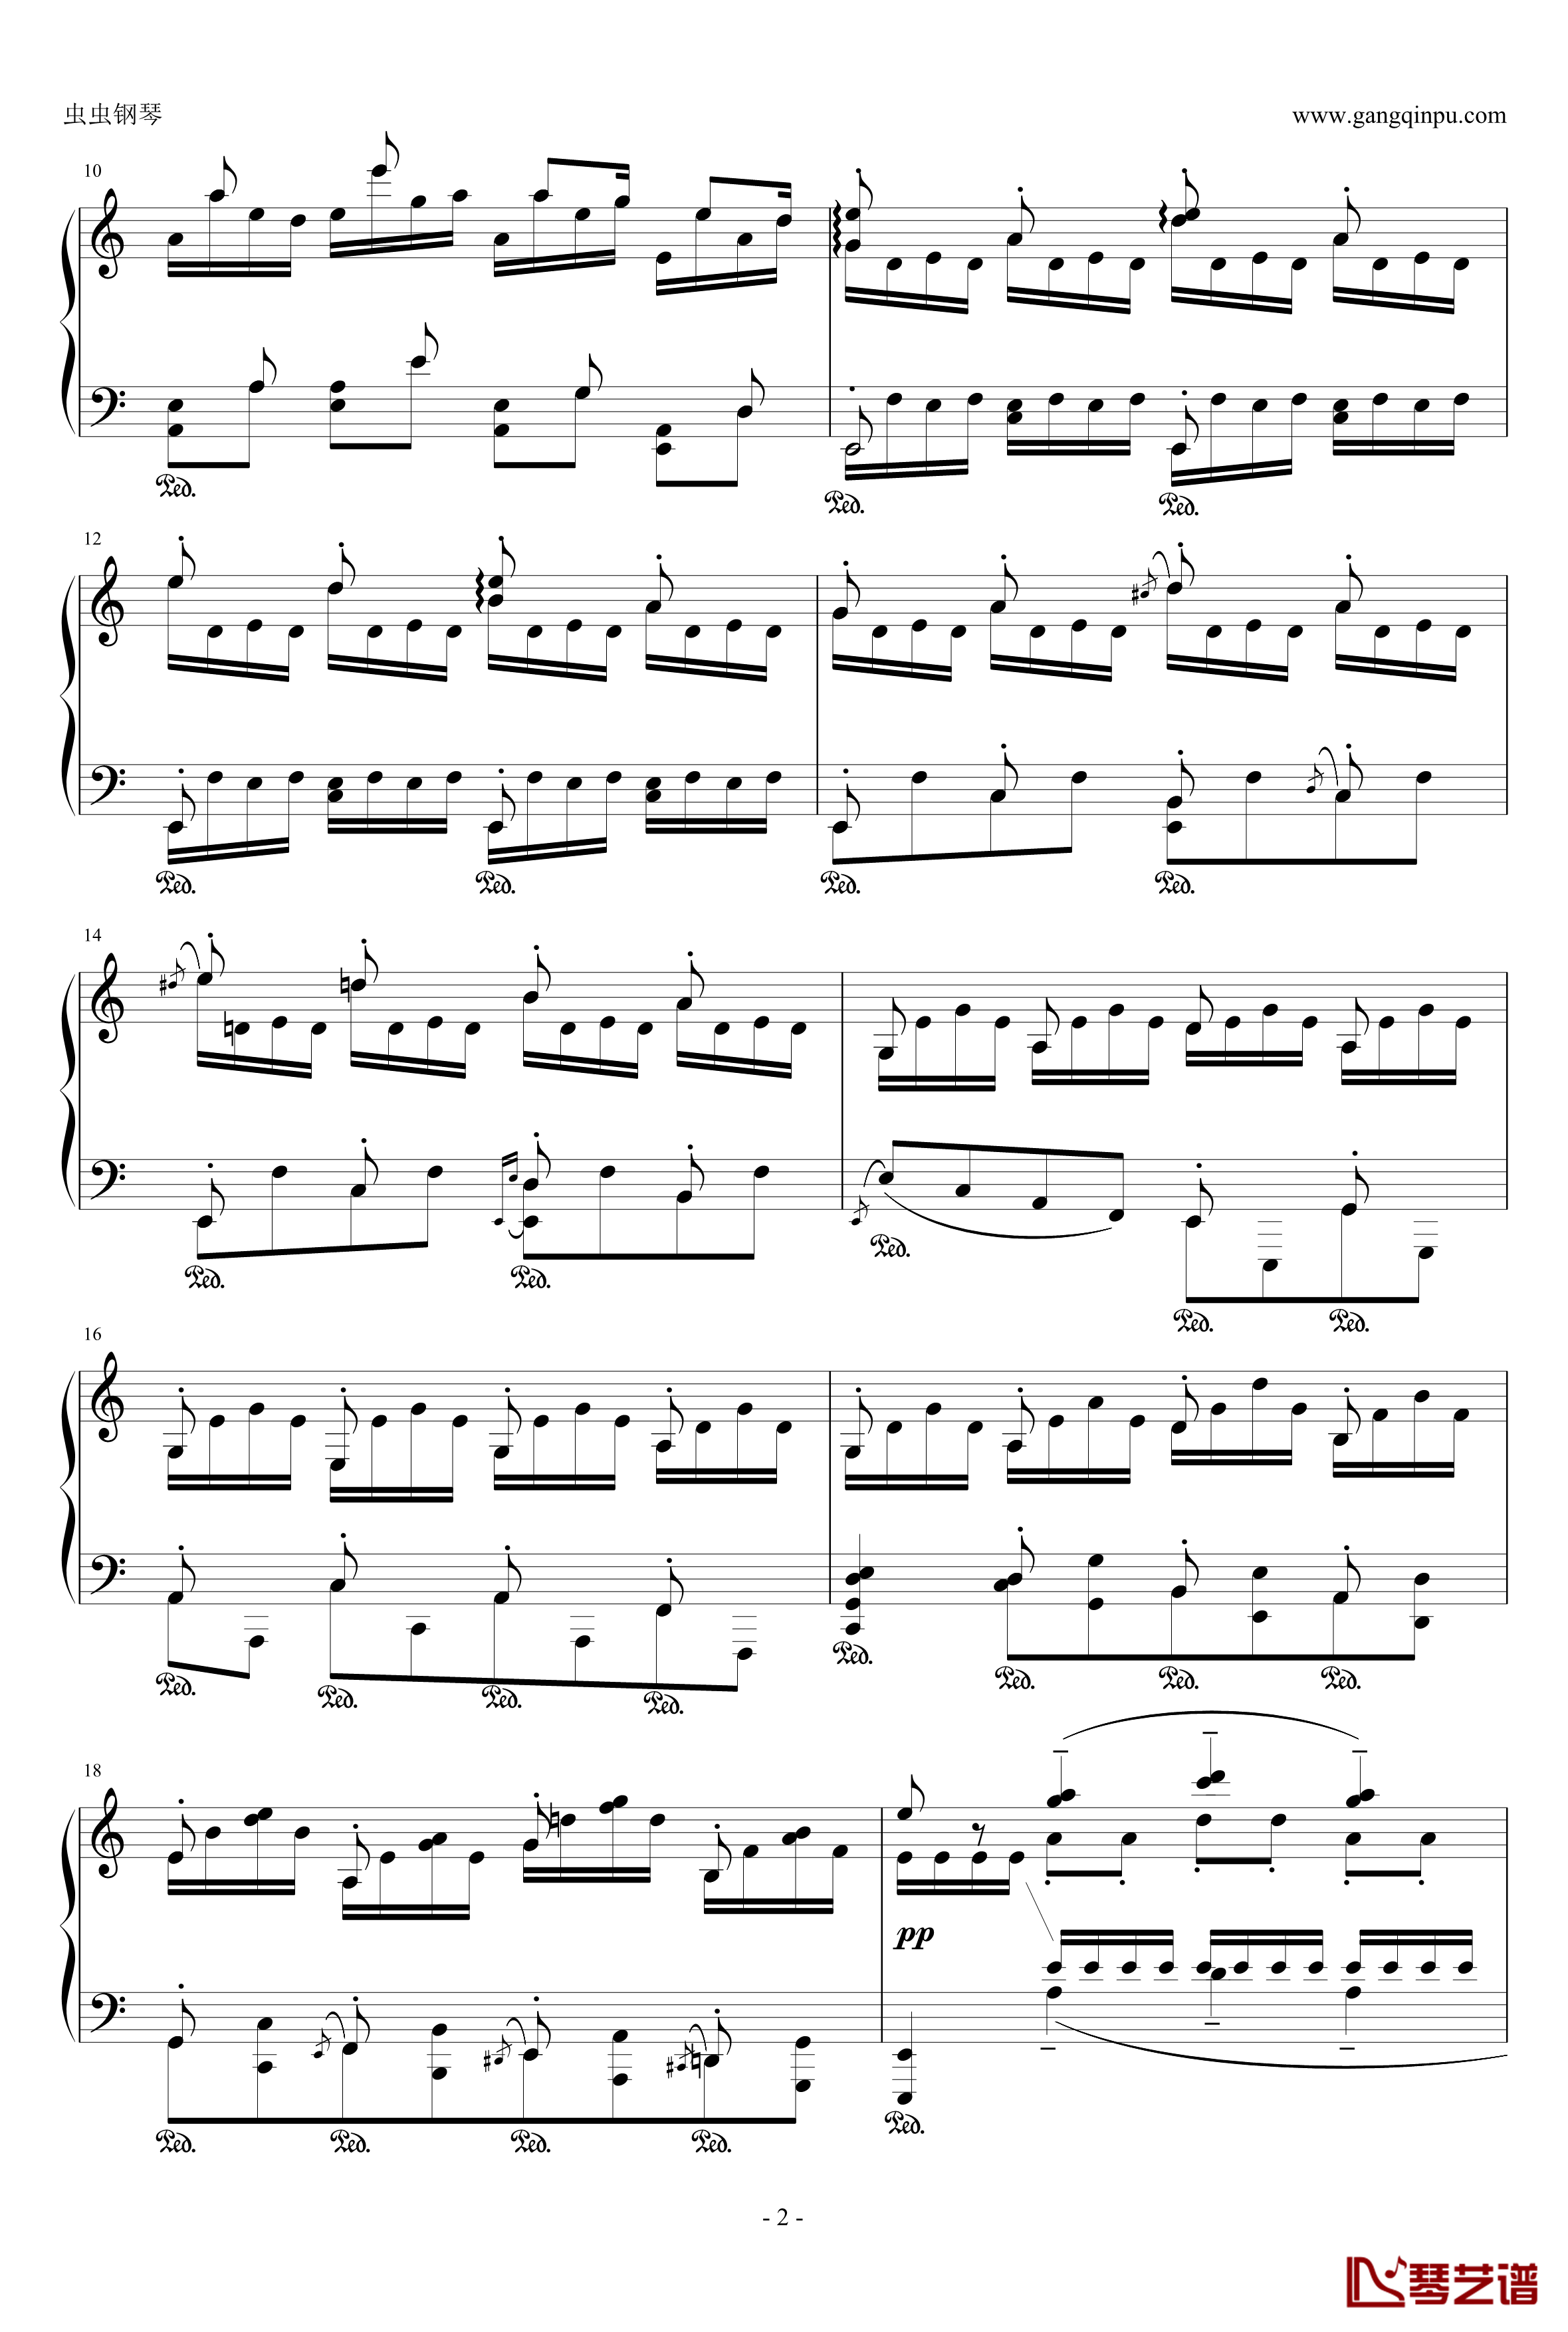 爪哇组曲钢琴谱-戈多夫斯基2